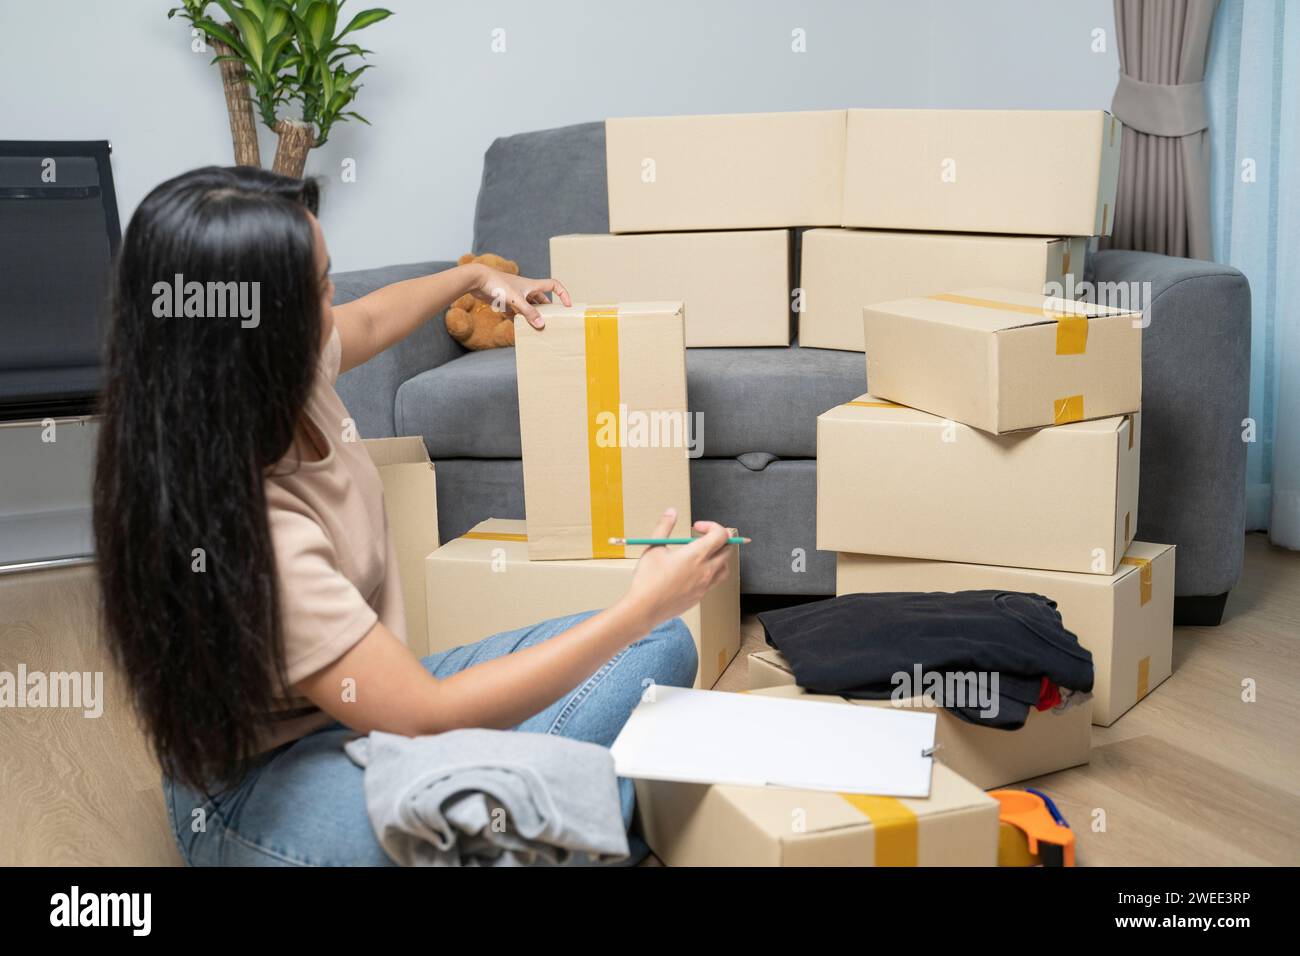 Asiatische Frau, die eine Checkliste macht, während sie für ein neues Zuhause packt. Stockfoto